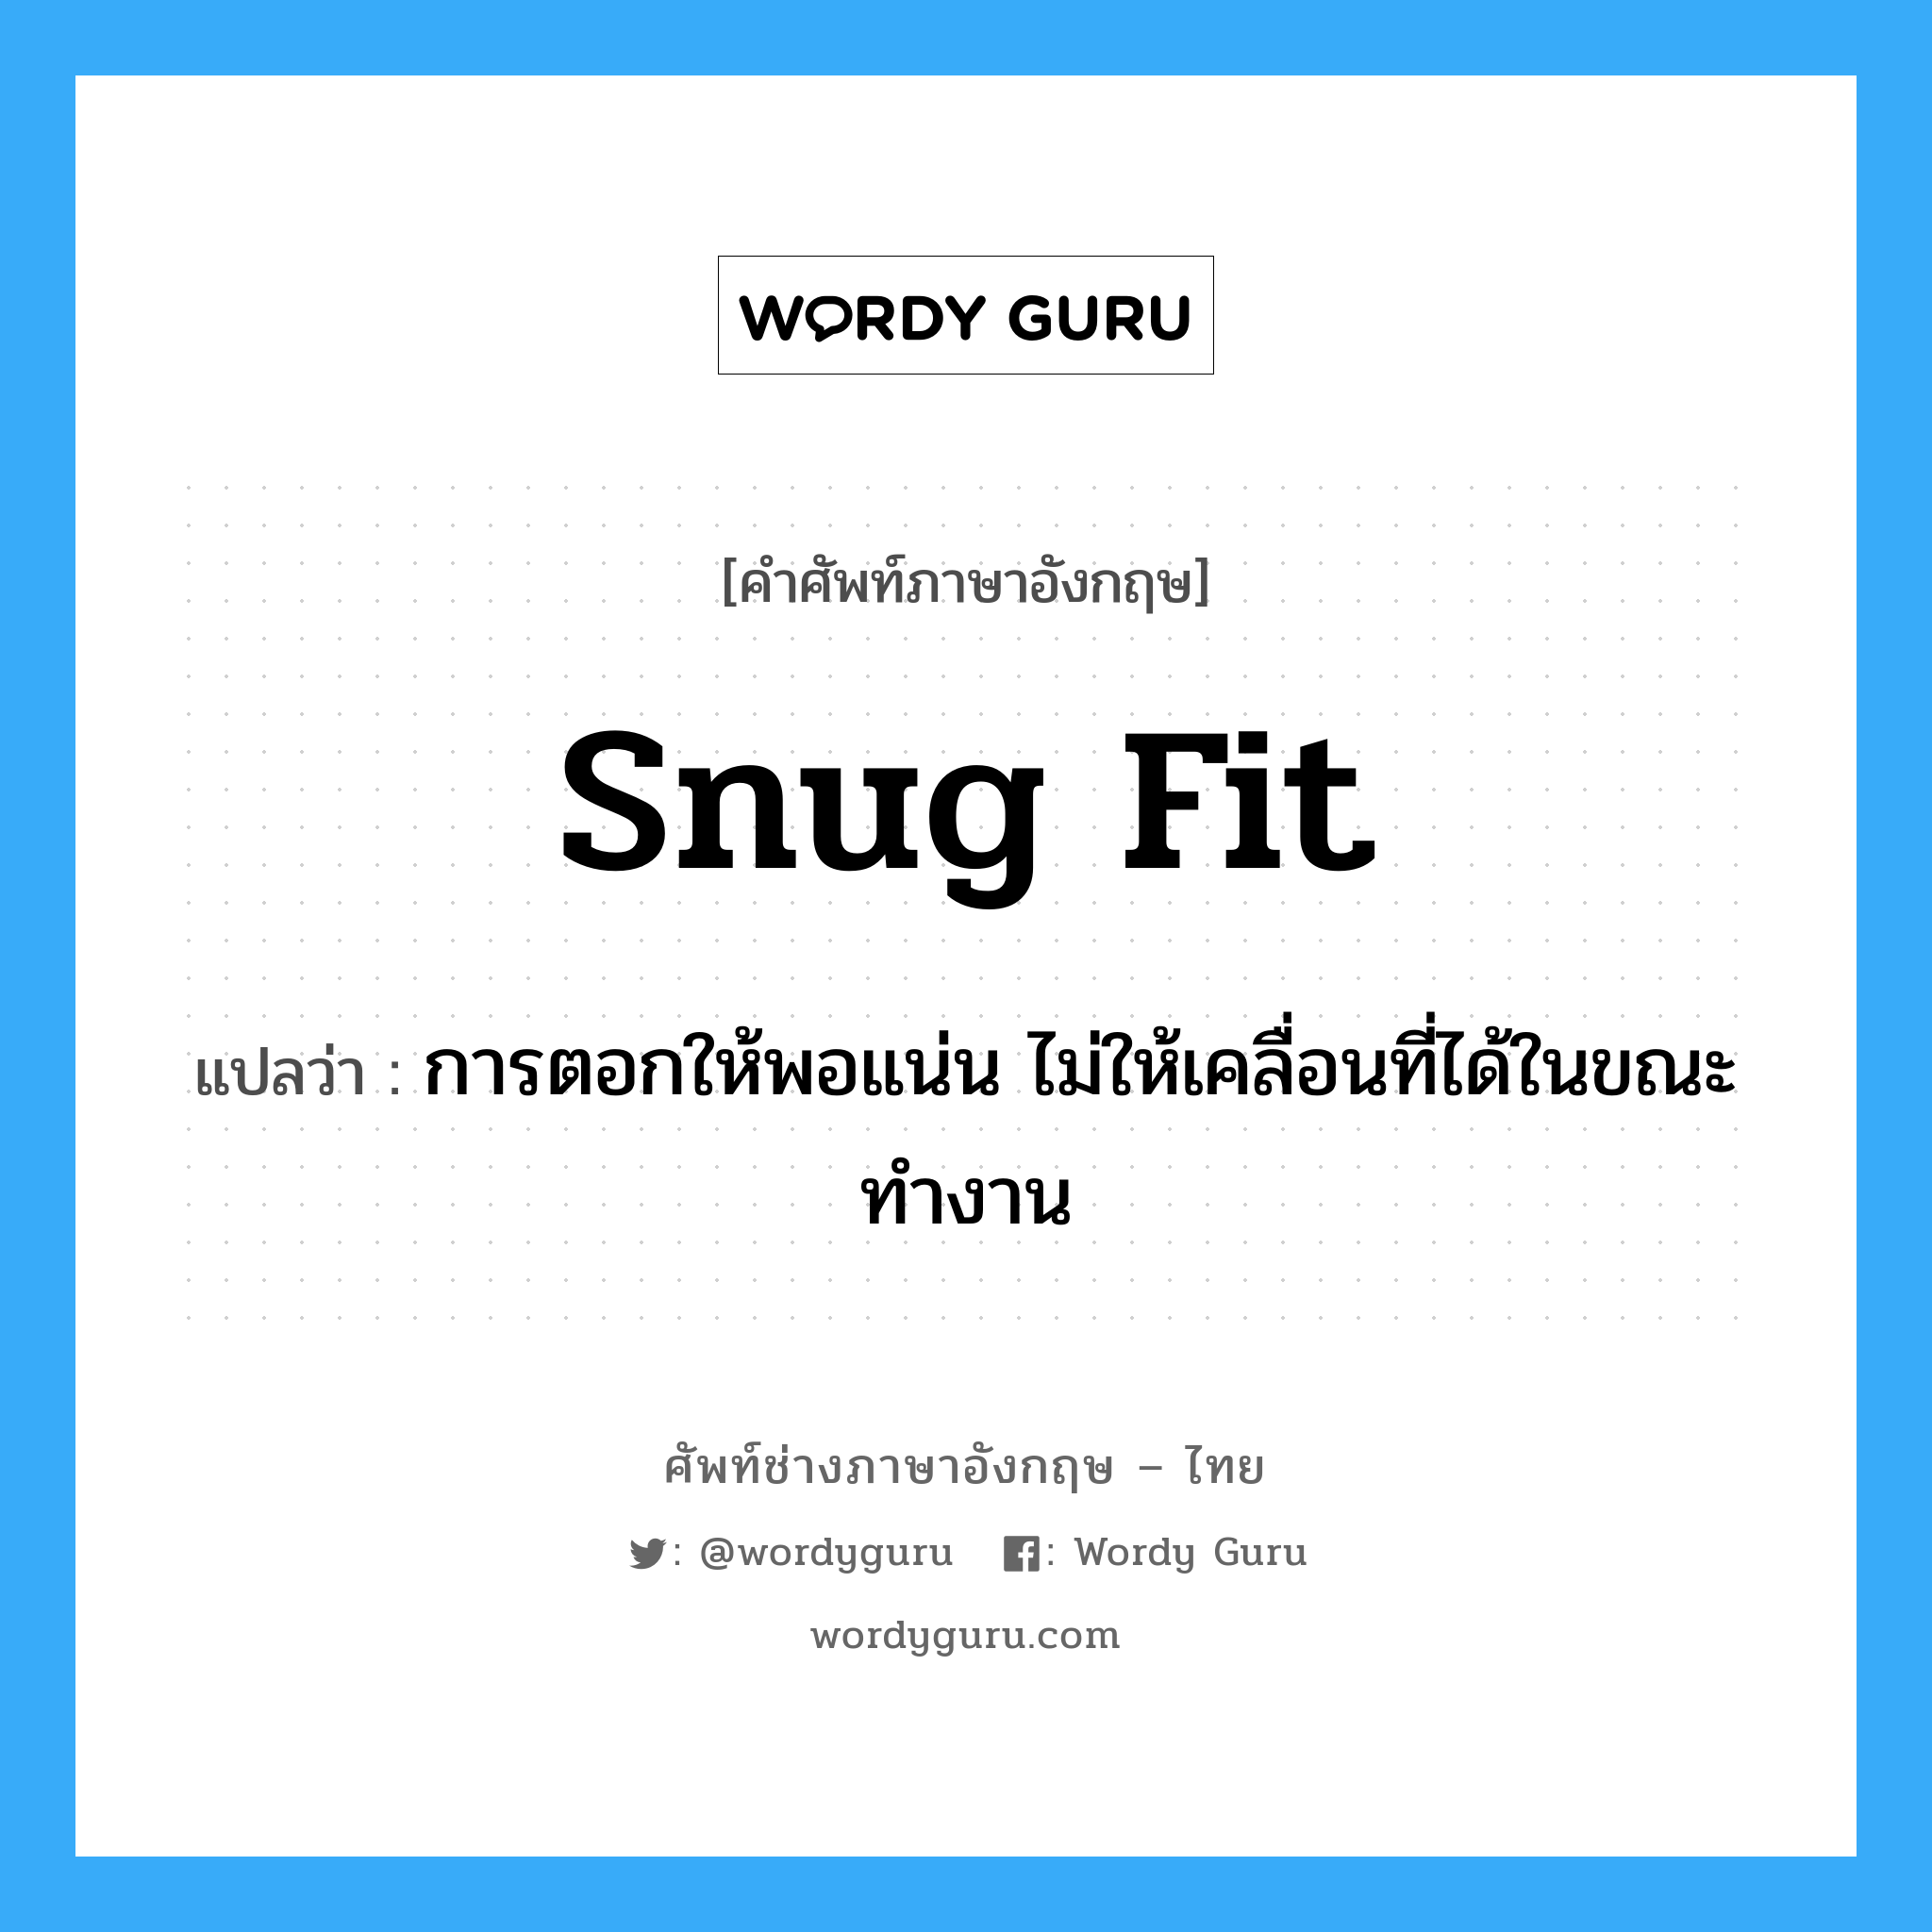 snug fit แปลว่า?, คำศัพท์ช่างภาษาอังกฤษ - ไทย snug fit คำศัพท์ภาษาอังกฤษ snug fit แปลว่า การตอกให้พอแน่น ไม่ให้เคลื่อนที่ได้ในขณะทำงาน